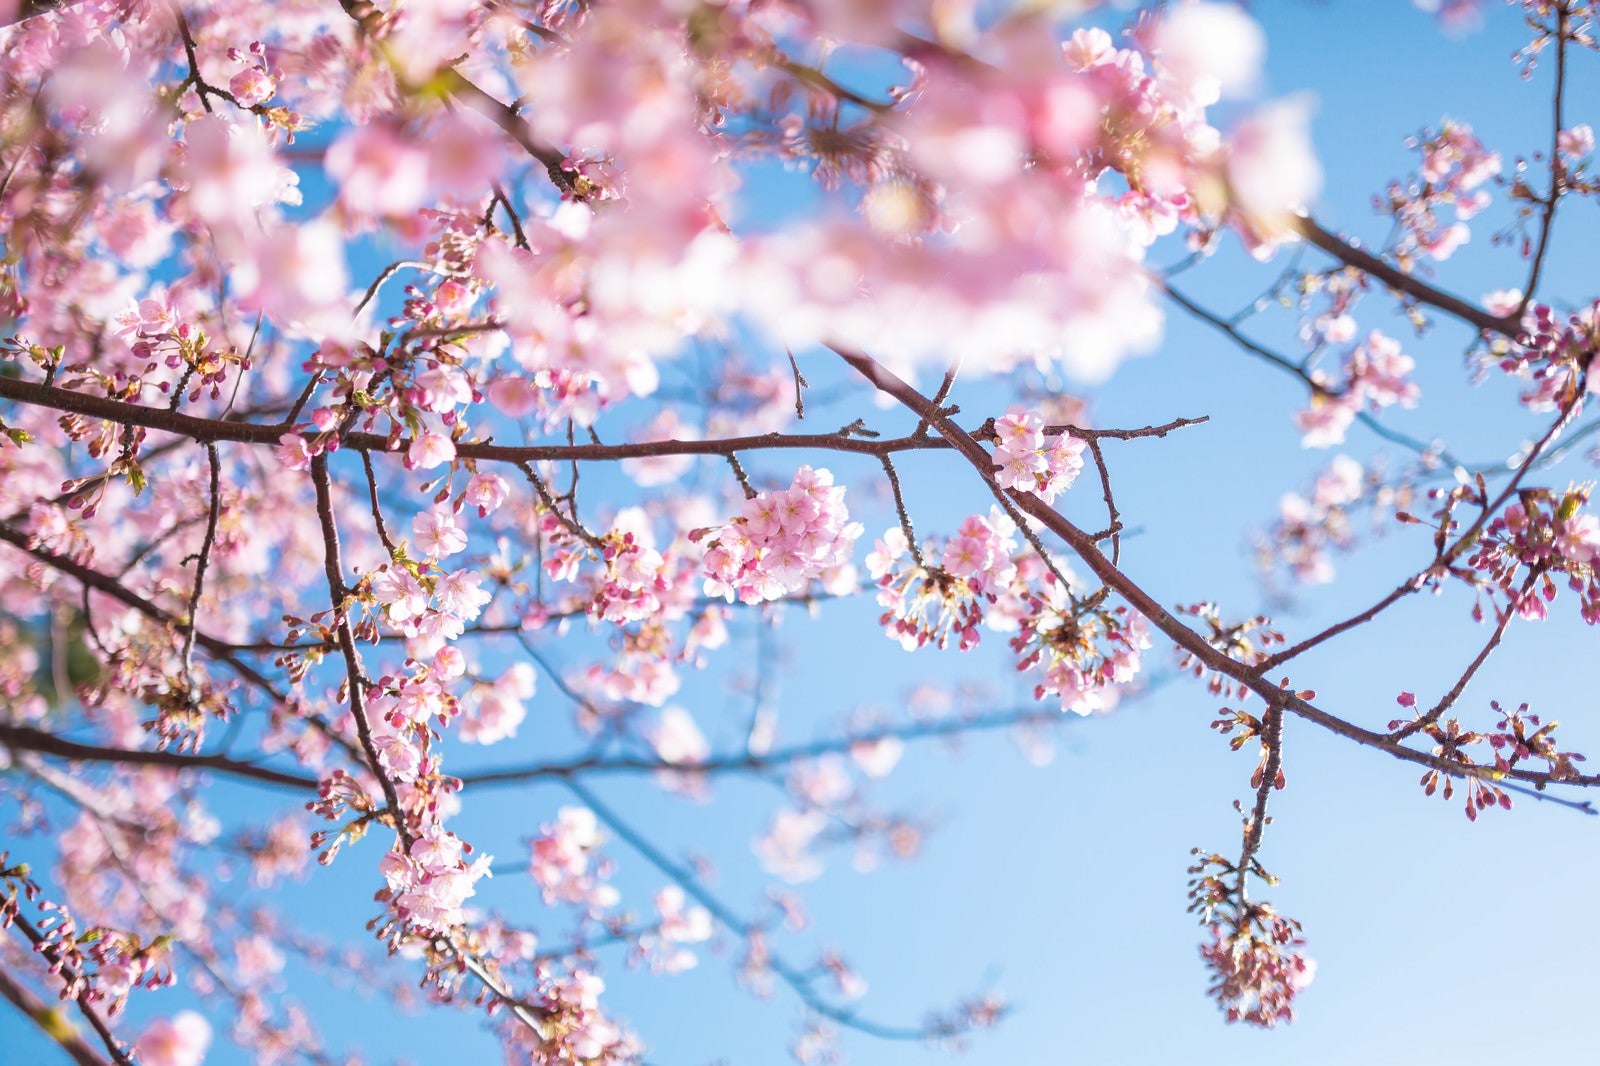 「青く鮮やかな空と桜」の写真